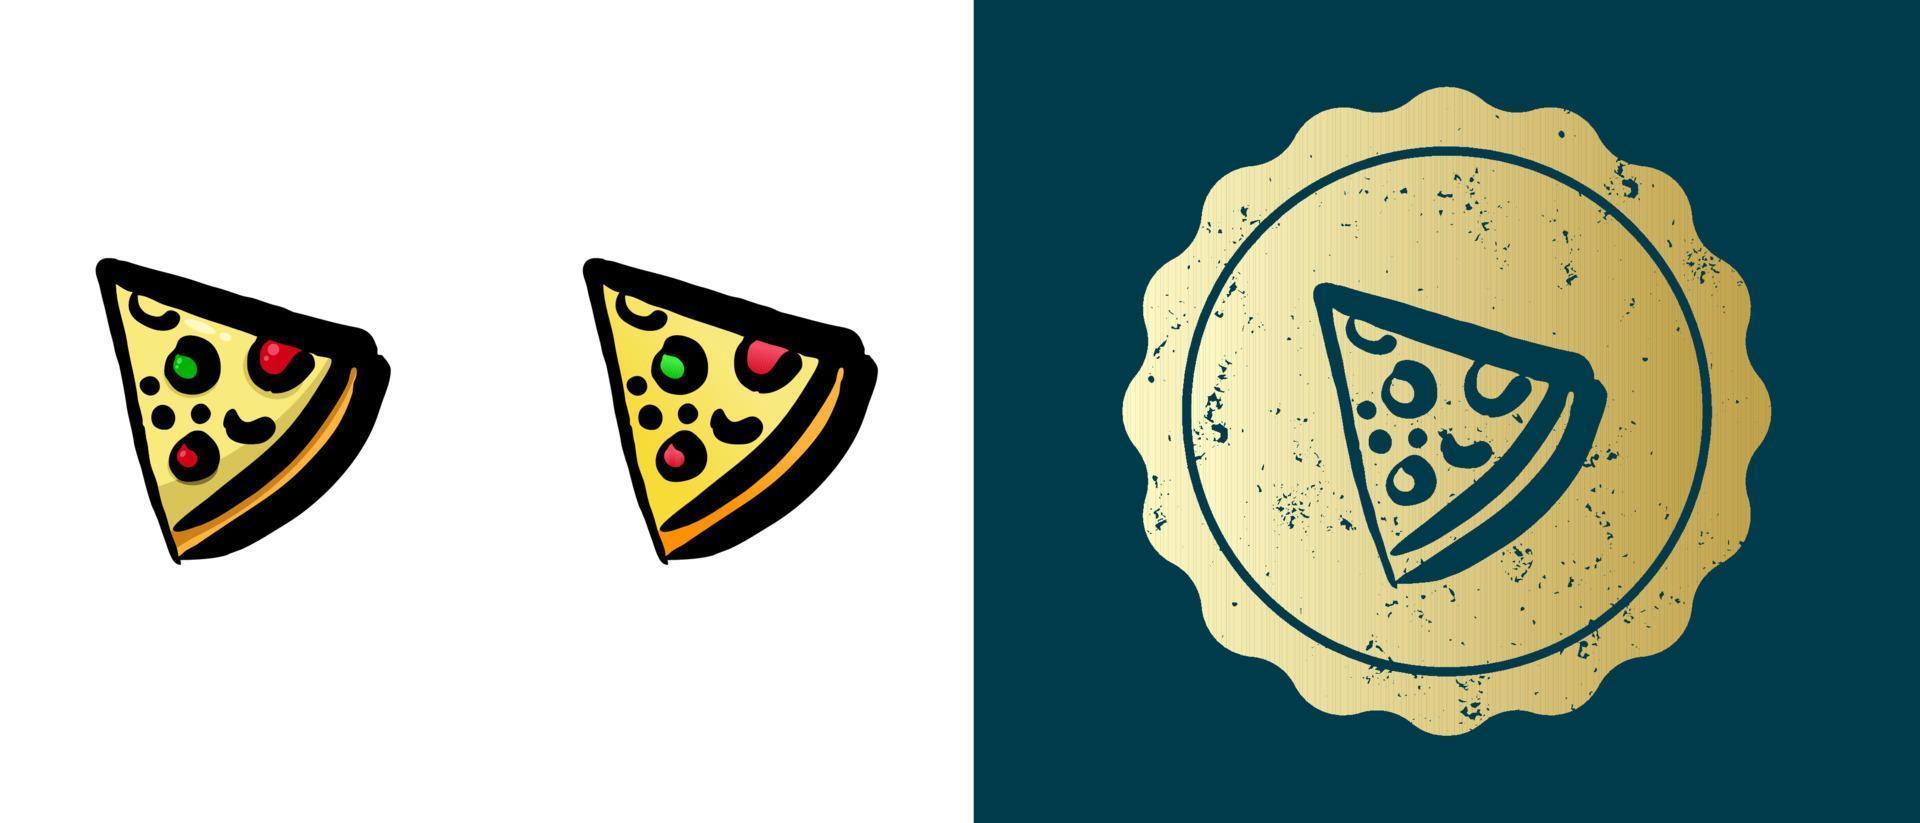 este es un conjunto de iconos retro, de contorno y degradados de una rebanada de pizza. esta es una pegatina dorada, una etiqueta para una porción de pizza. solución elegante para el diseño de envases y sitios web. sello de oro grunge redondo. vector